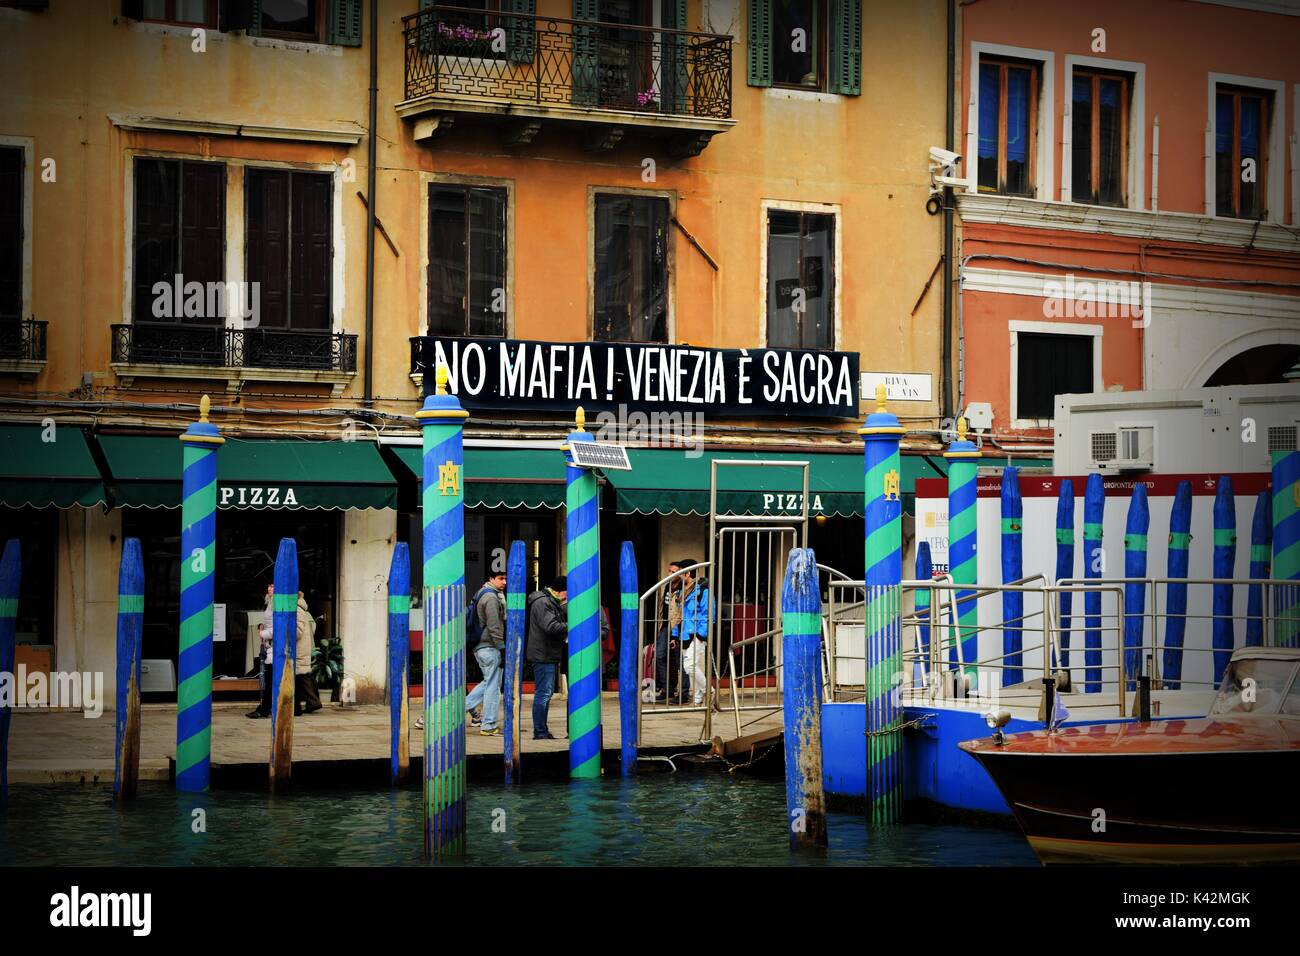 un-banner-en-una-casa-en-el-gran-canal-de-venecia-diciendo-no-mafia-venezia-e-sacra-cerca-del-puente-rialto-k42mgk.jpg